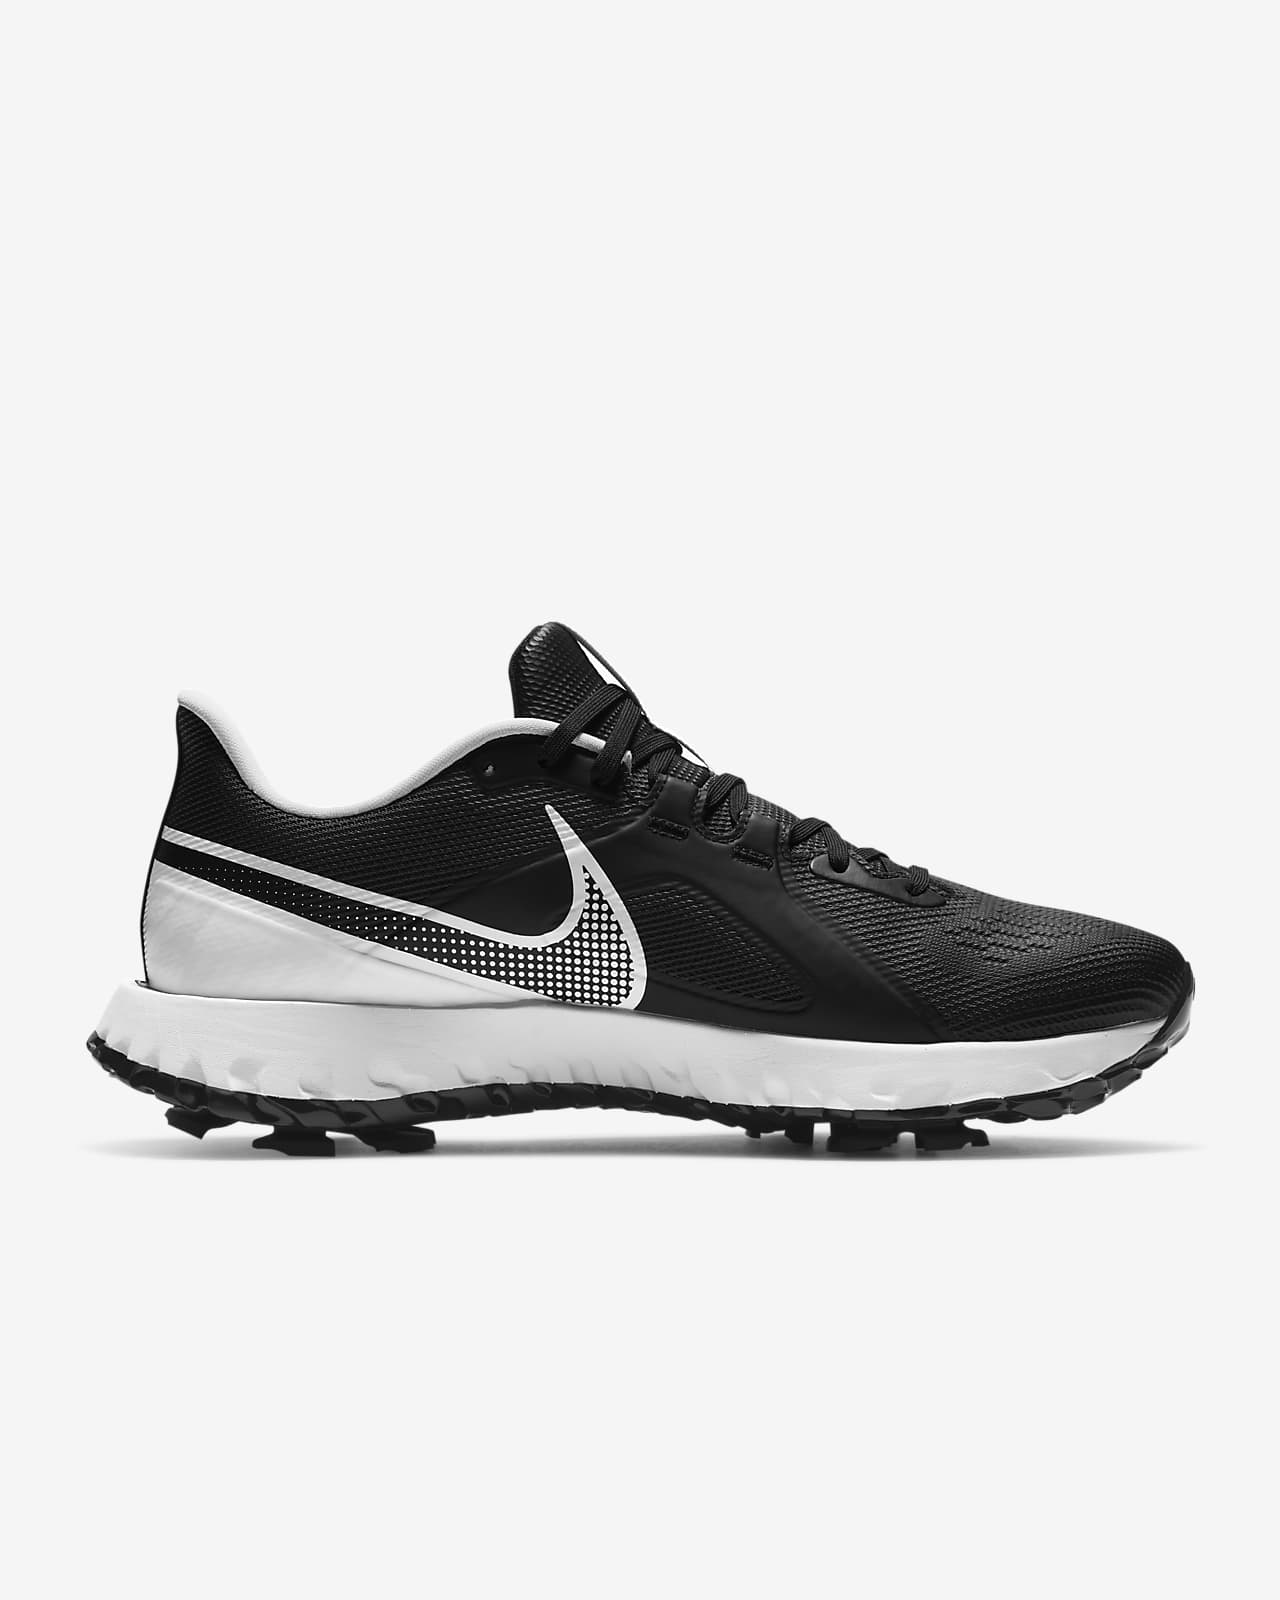 Nike React Infinity Pro Golf Shoe. Nike NZ